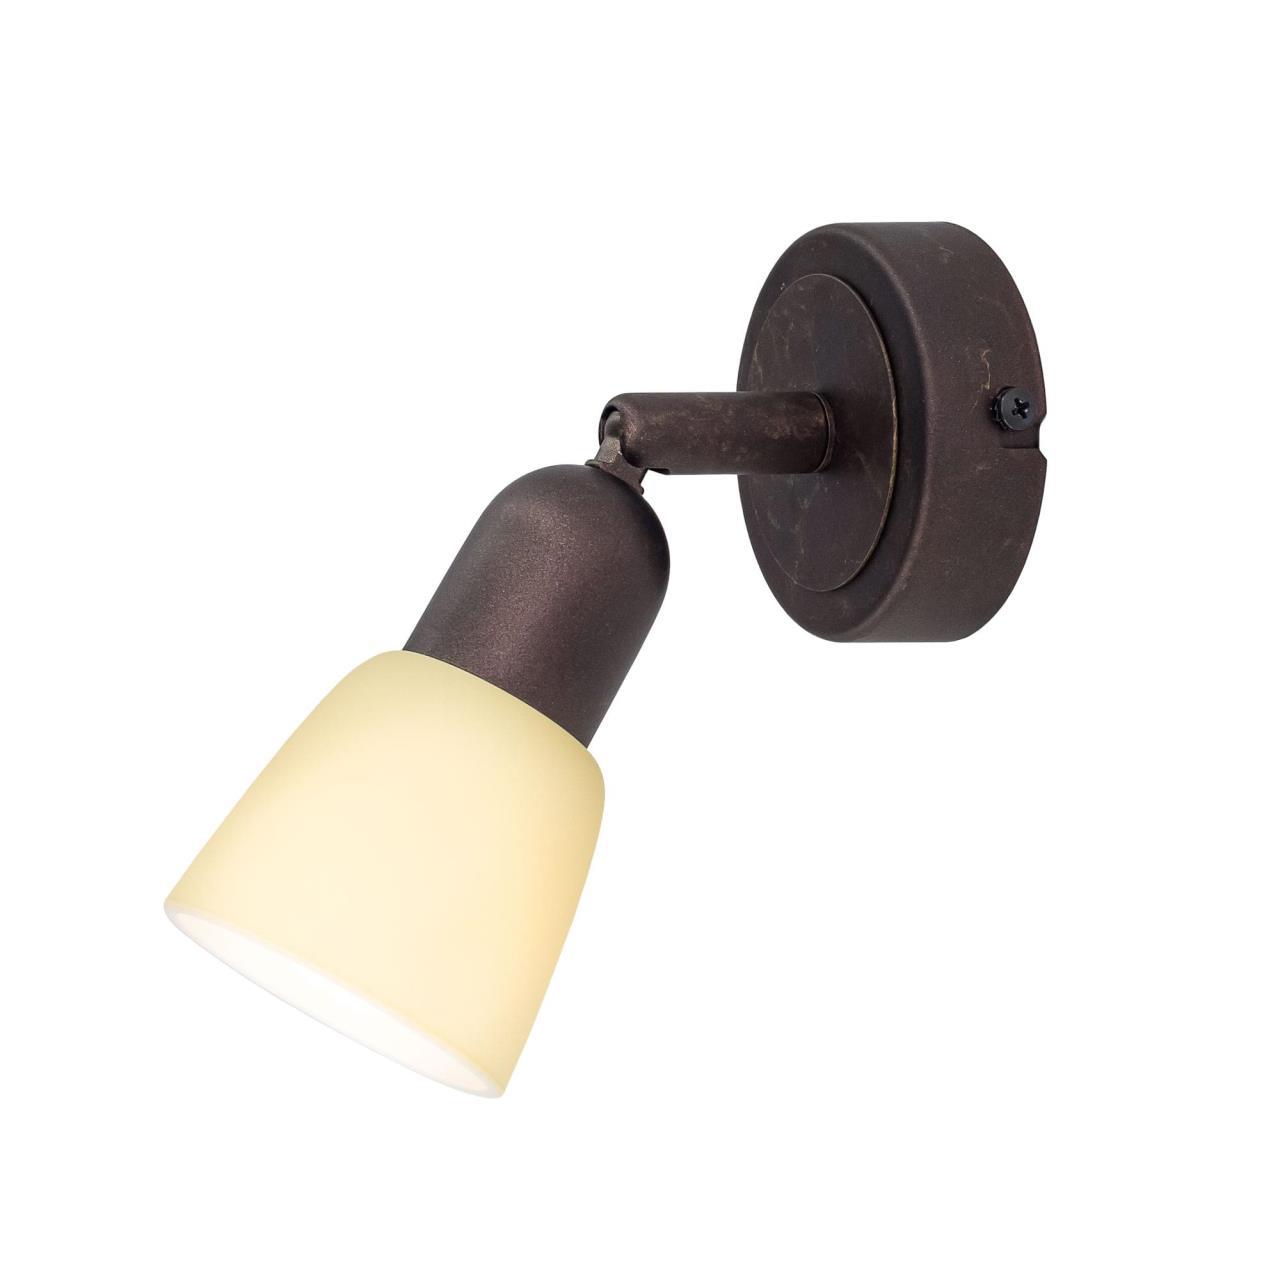 Потолочный светильник с регулировкой направления света Citilux Ронда CL506514, 1xE14x60W, коричневый, бежевый, металл, стекло - фото 1